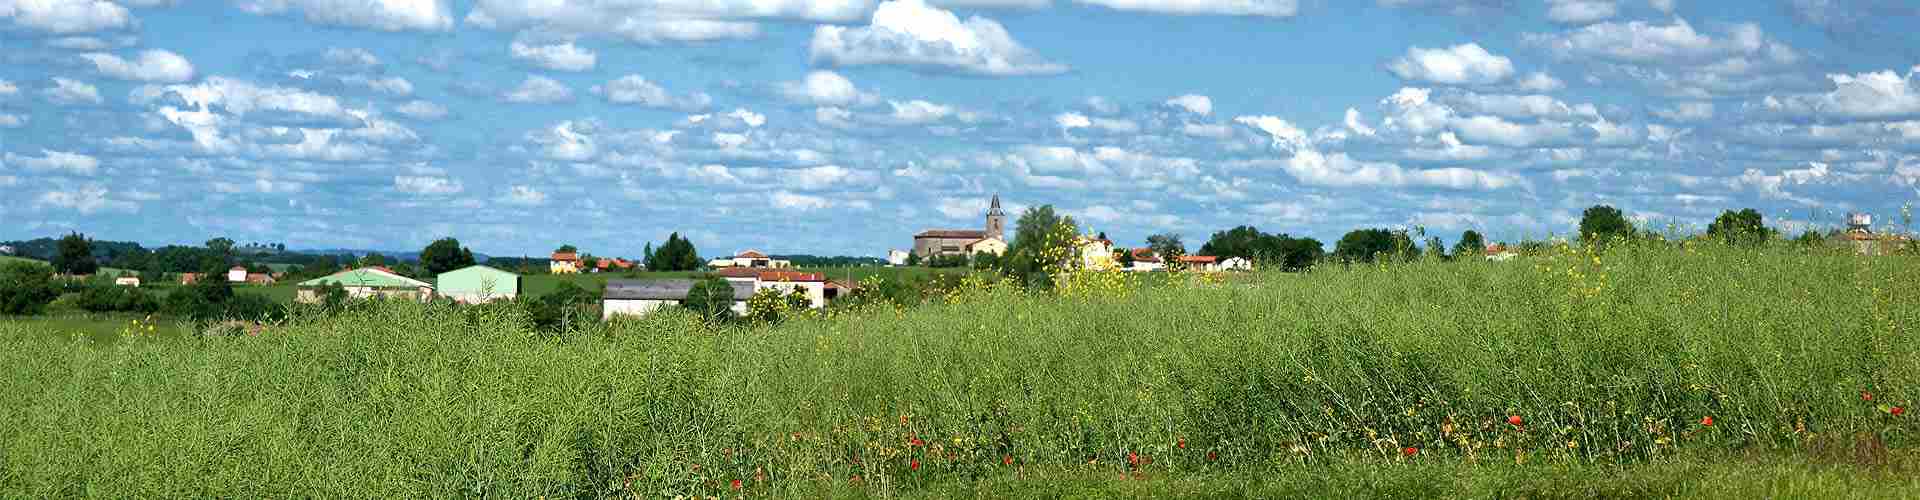 Casas rurales cerca de un campo de golf en Navarra